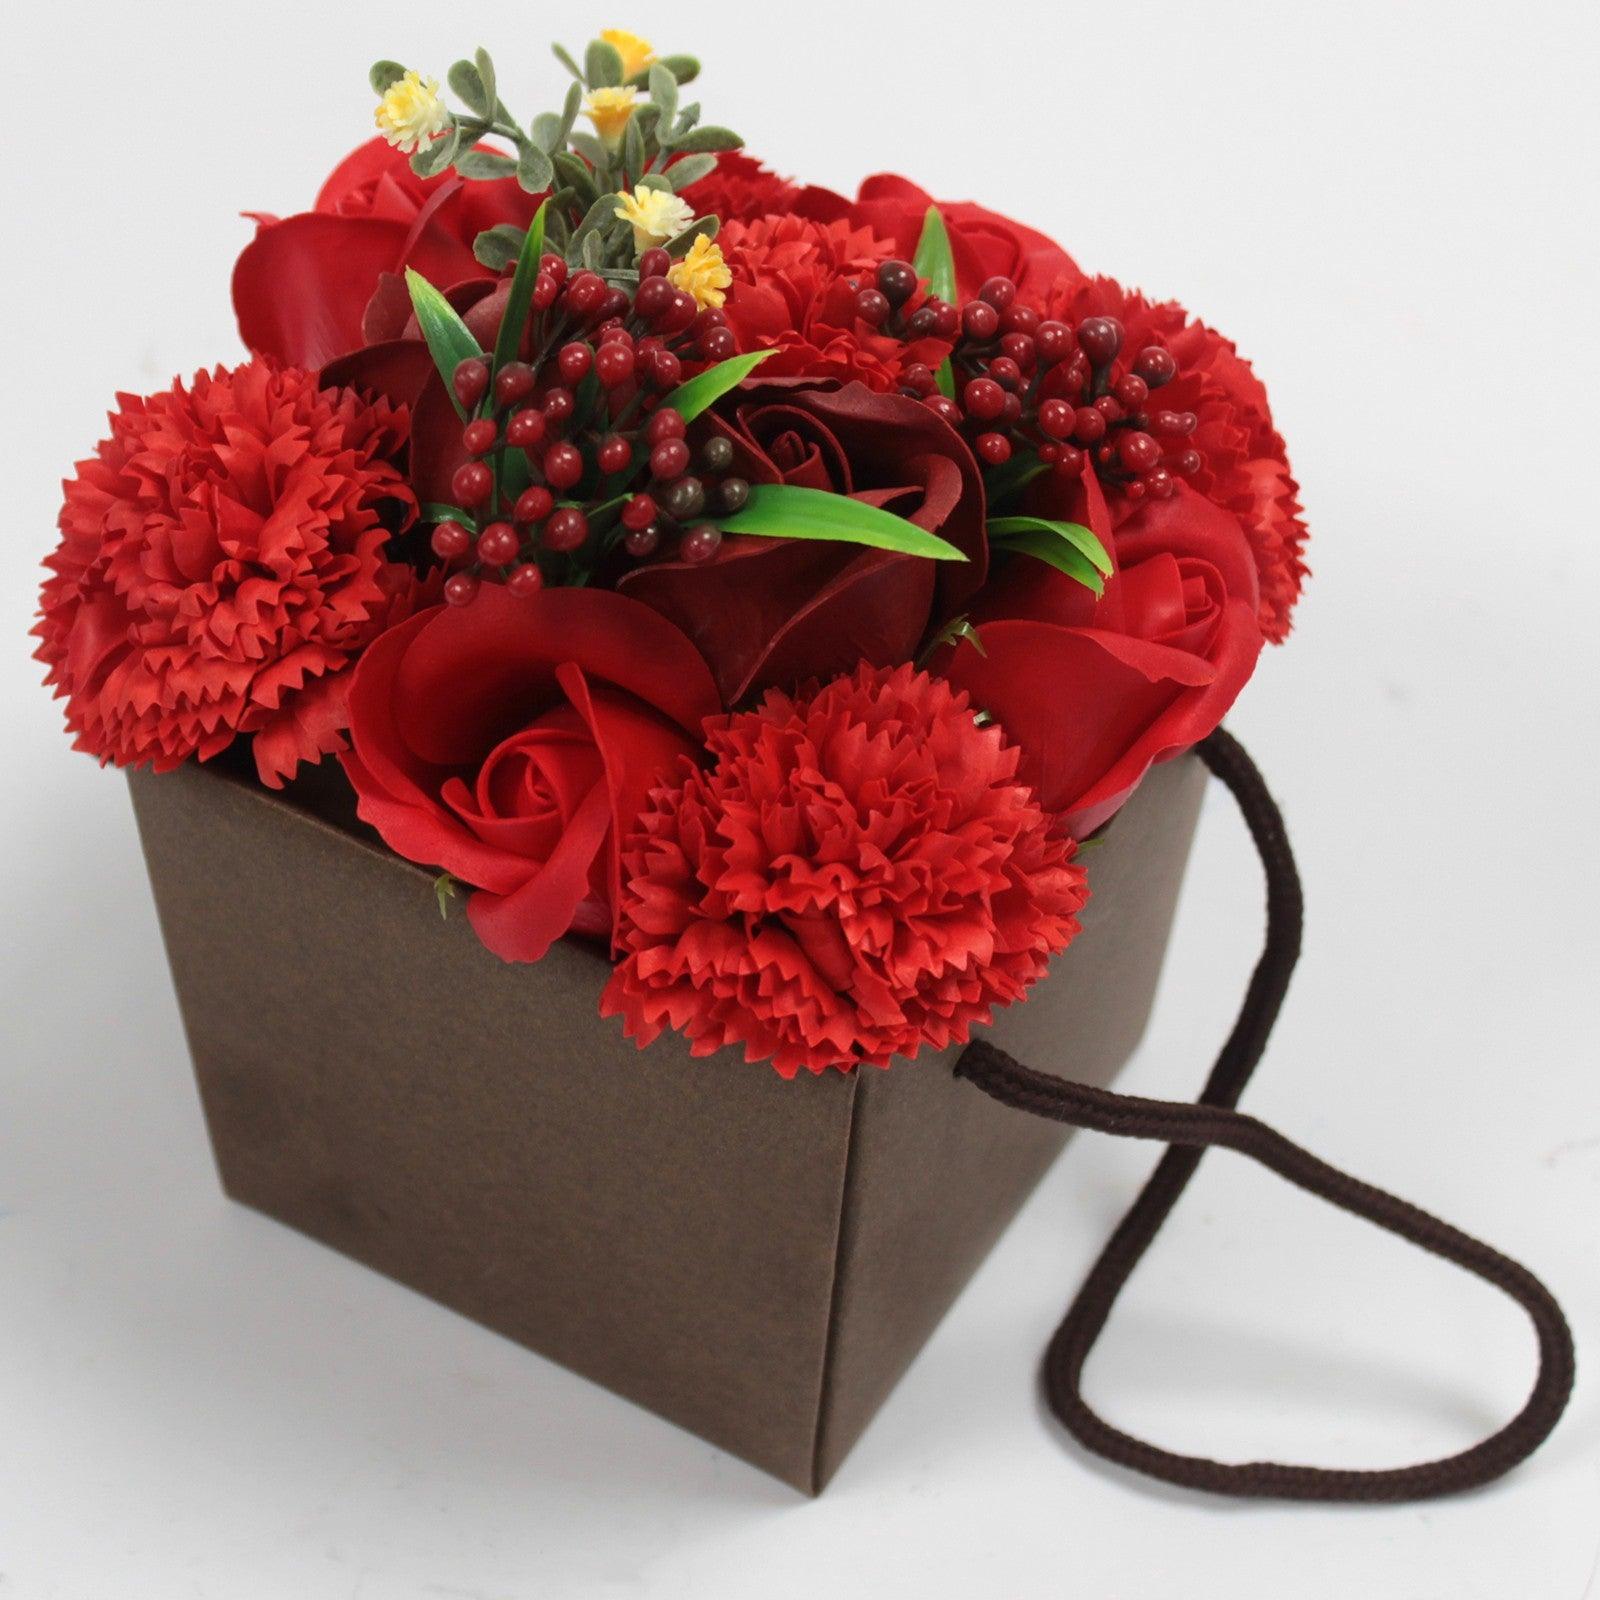 Soap Flower Bouquet - Red Rose & Carnation - DuvetDay.co.uk